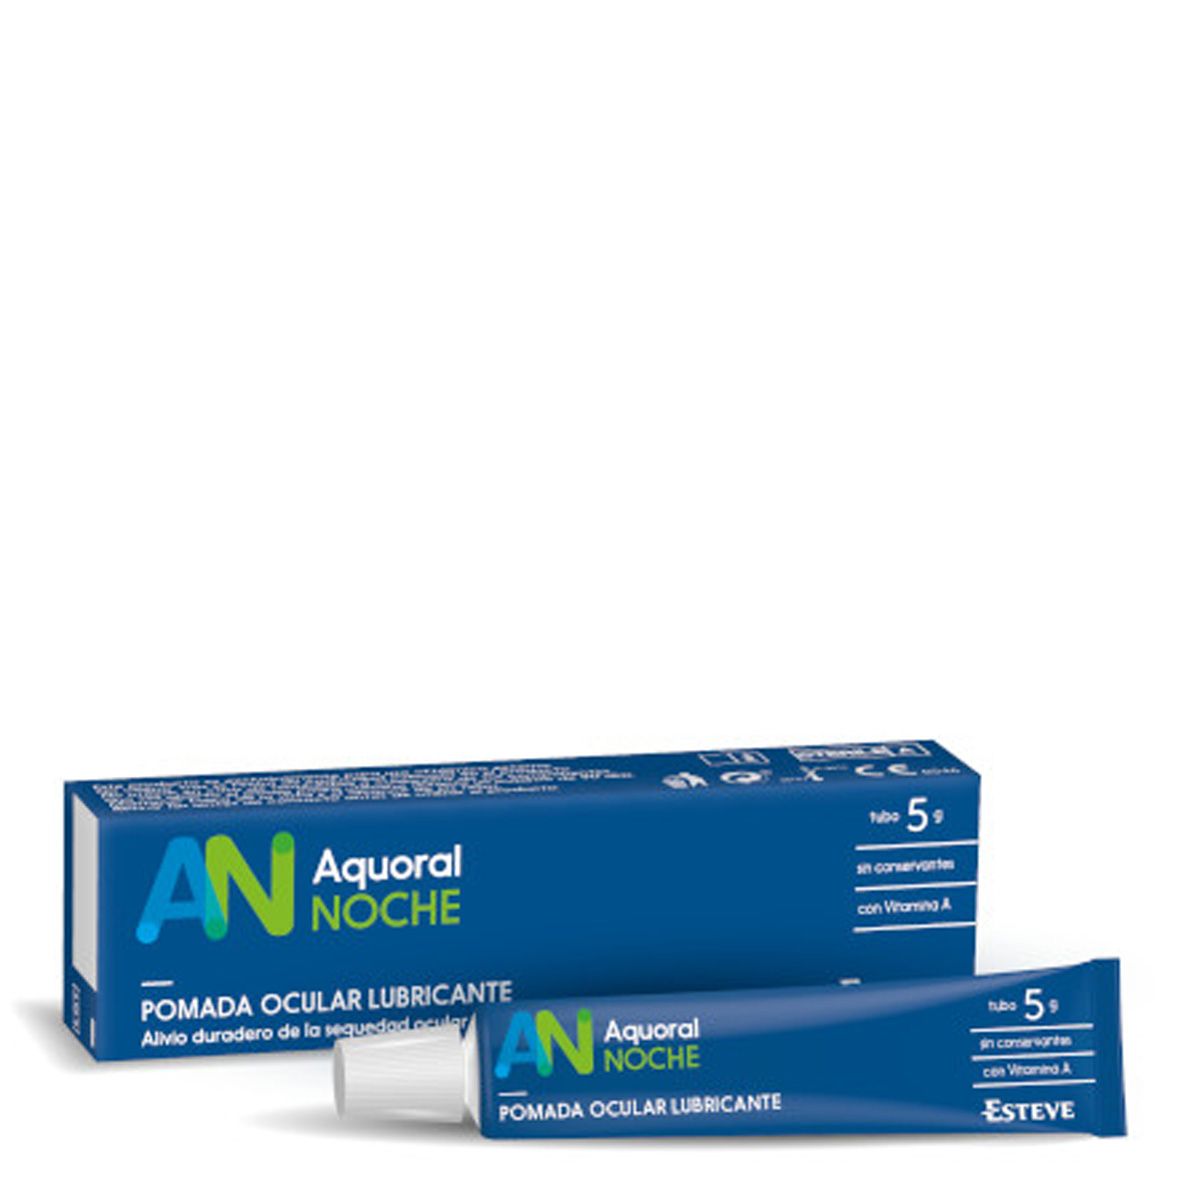 Aquoral Noche®, pomada ocular lubricante con vitamina A